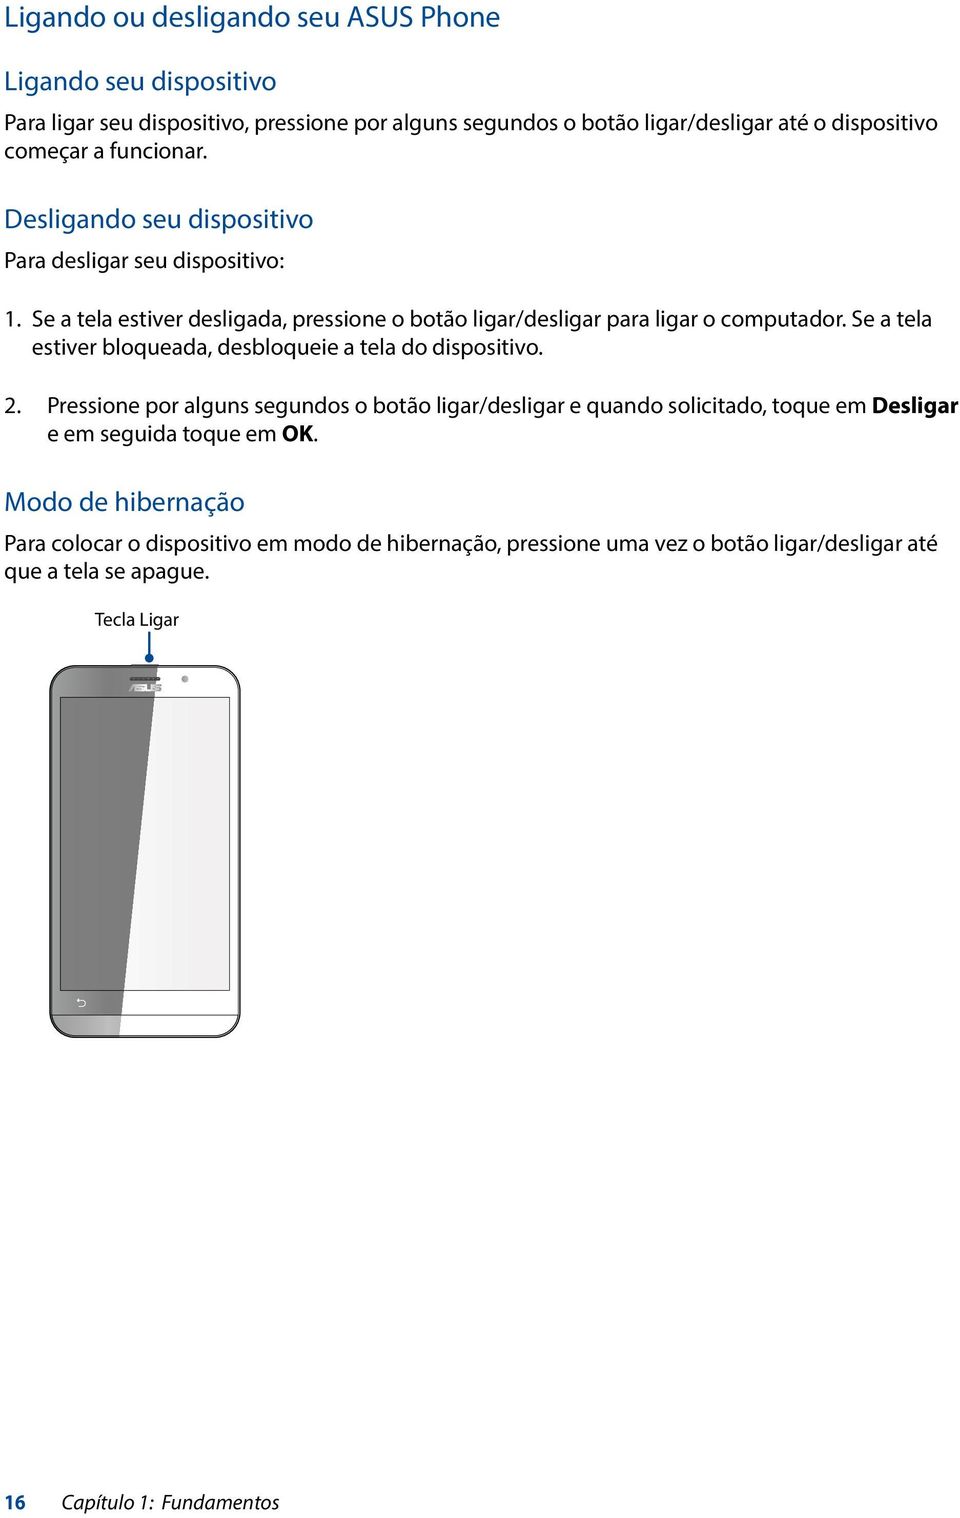 Se a tela estiver bloqueada, desbloqueie a tela do dispositivo. 2.